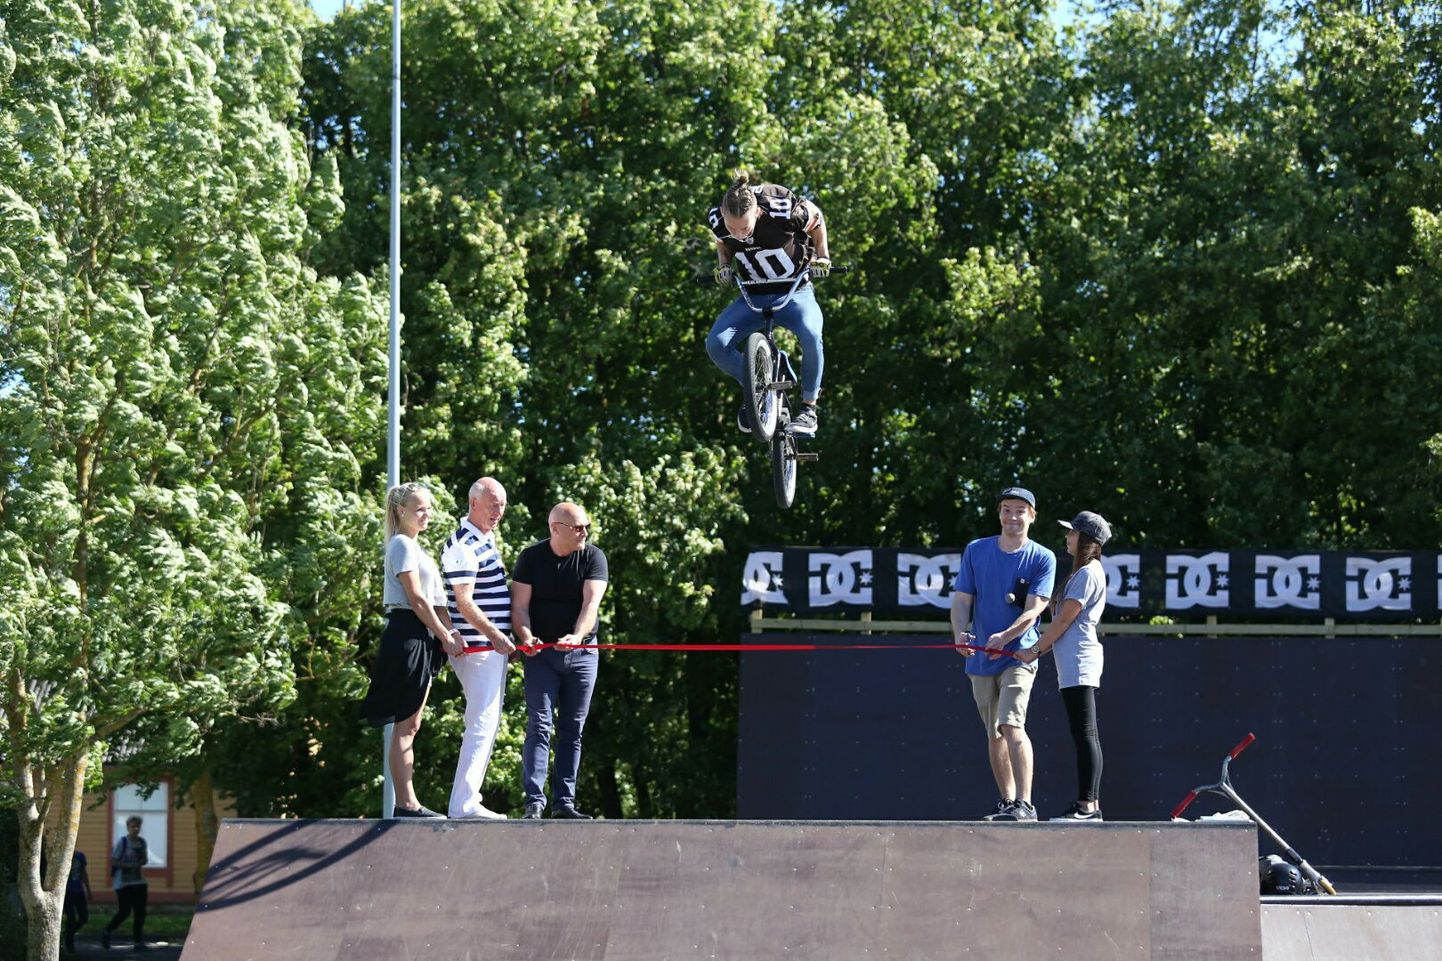 Rakveres avati Eesti suurim skate-park.